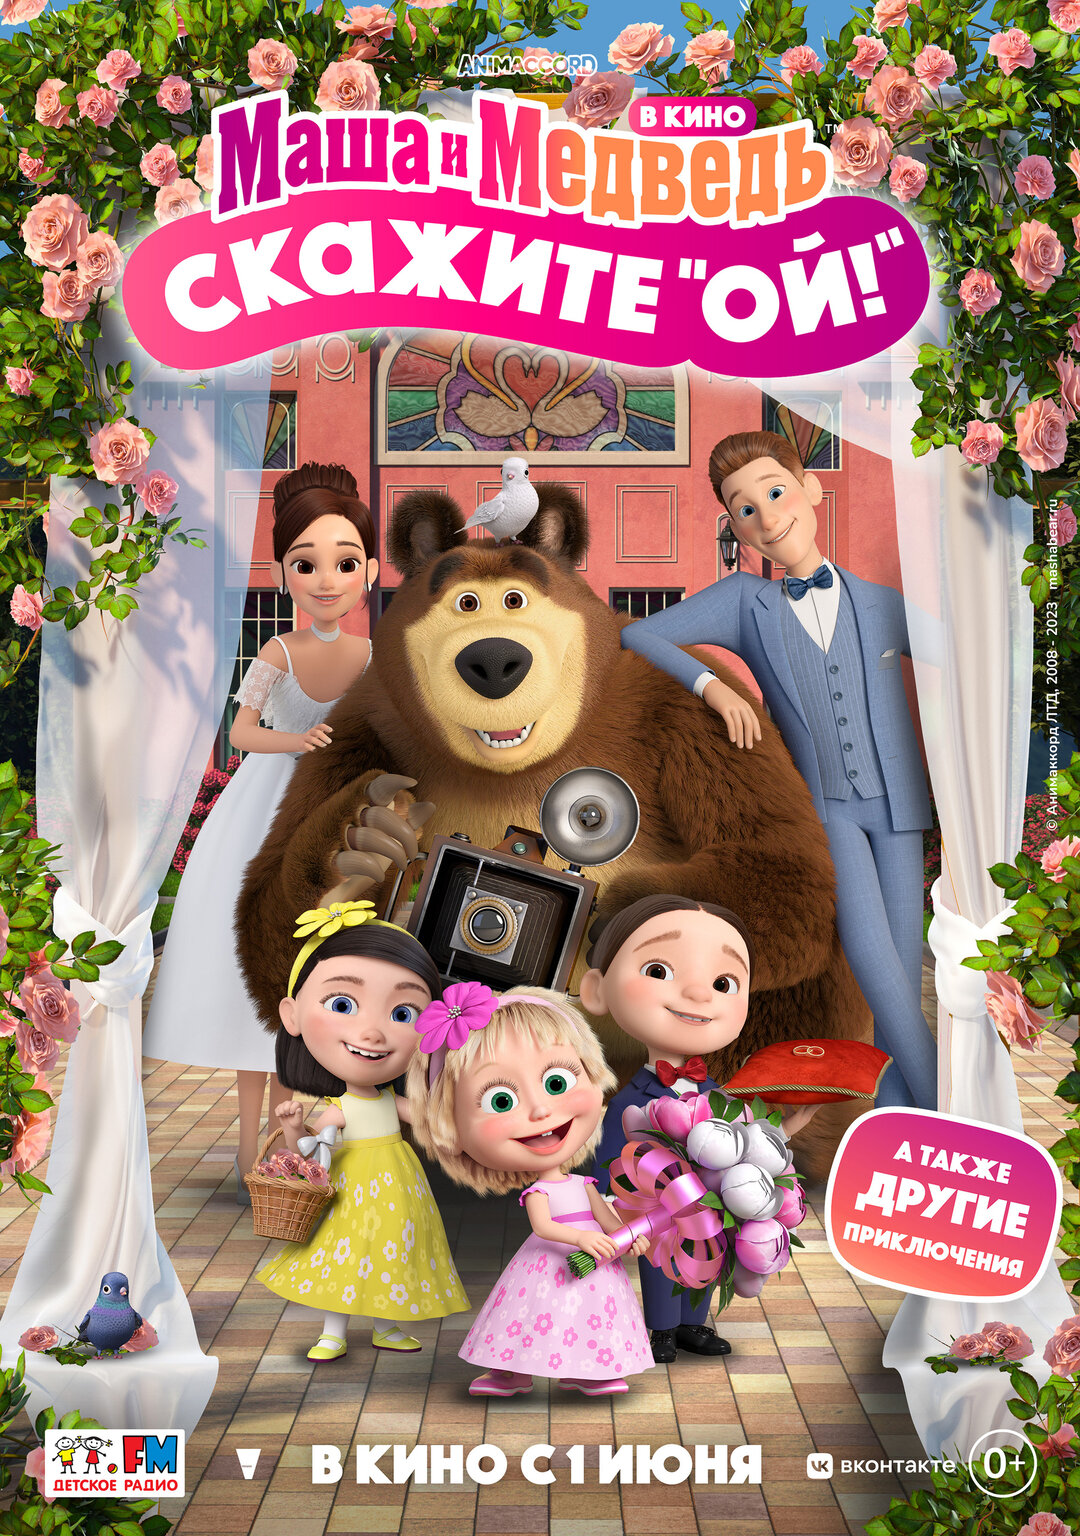 Обложка к картине "Маша и Медведь в кино: скажите «Ой!»"